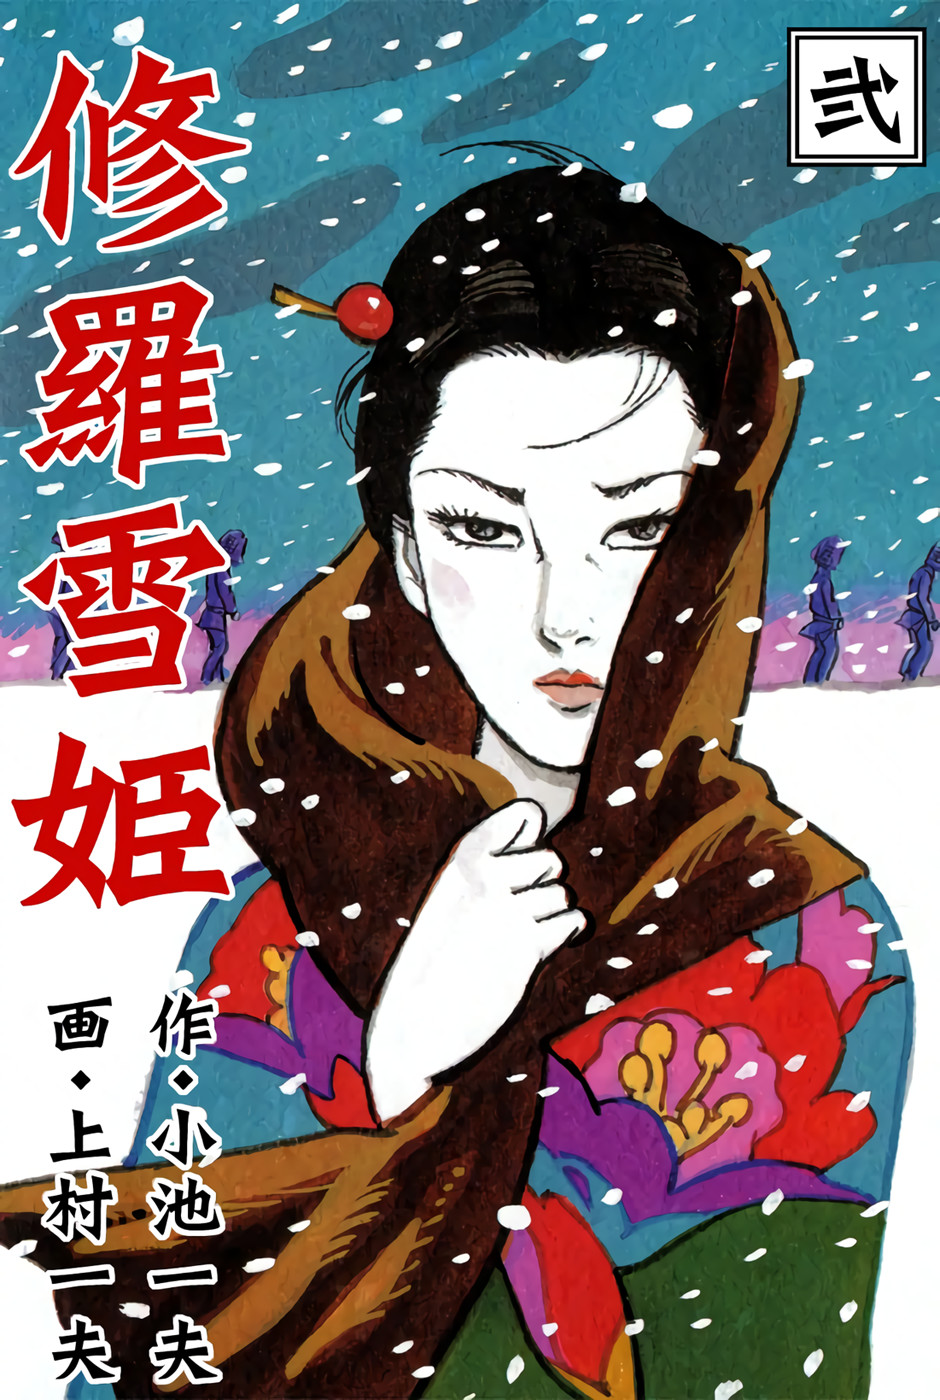 Госпожа кровавый снег. Shurayukihime - госпожа Кровавый снег. Леди Кровавый снег. Госпожа снег Кровавый снег. Госпожа Кровавый снег 2.